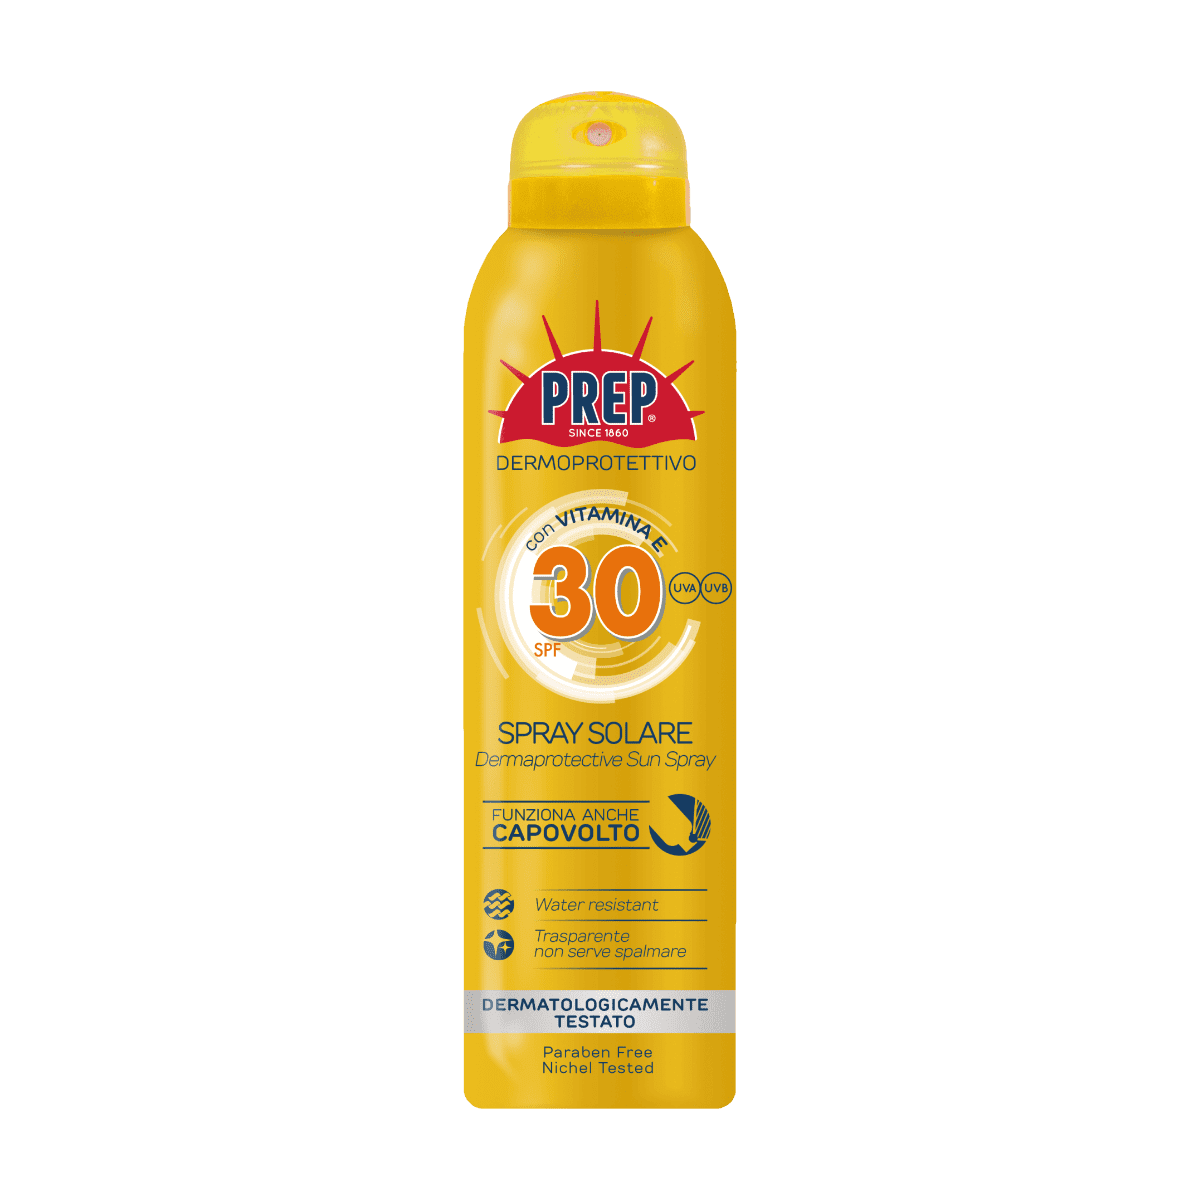 PREP Derma Protective Sun Spray SPF 30 - ochranný sprej na opalování, 150 ml